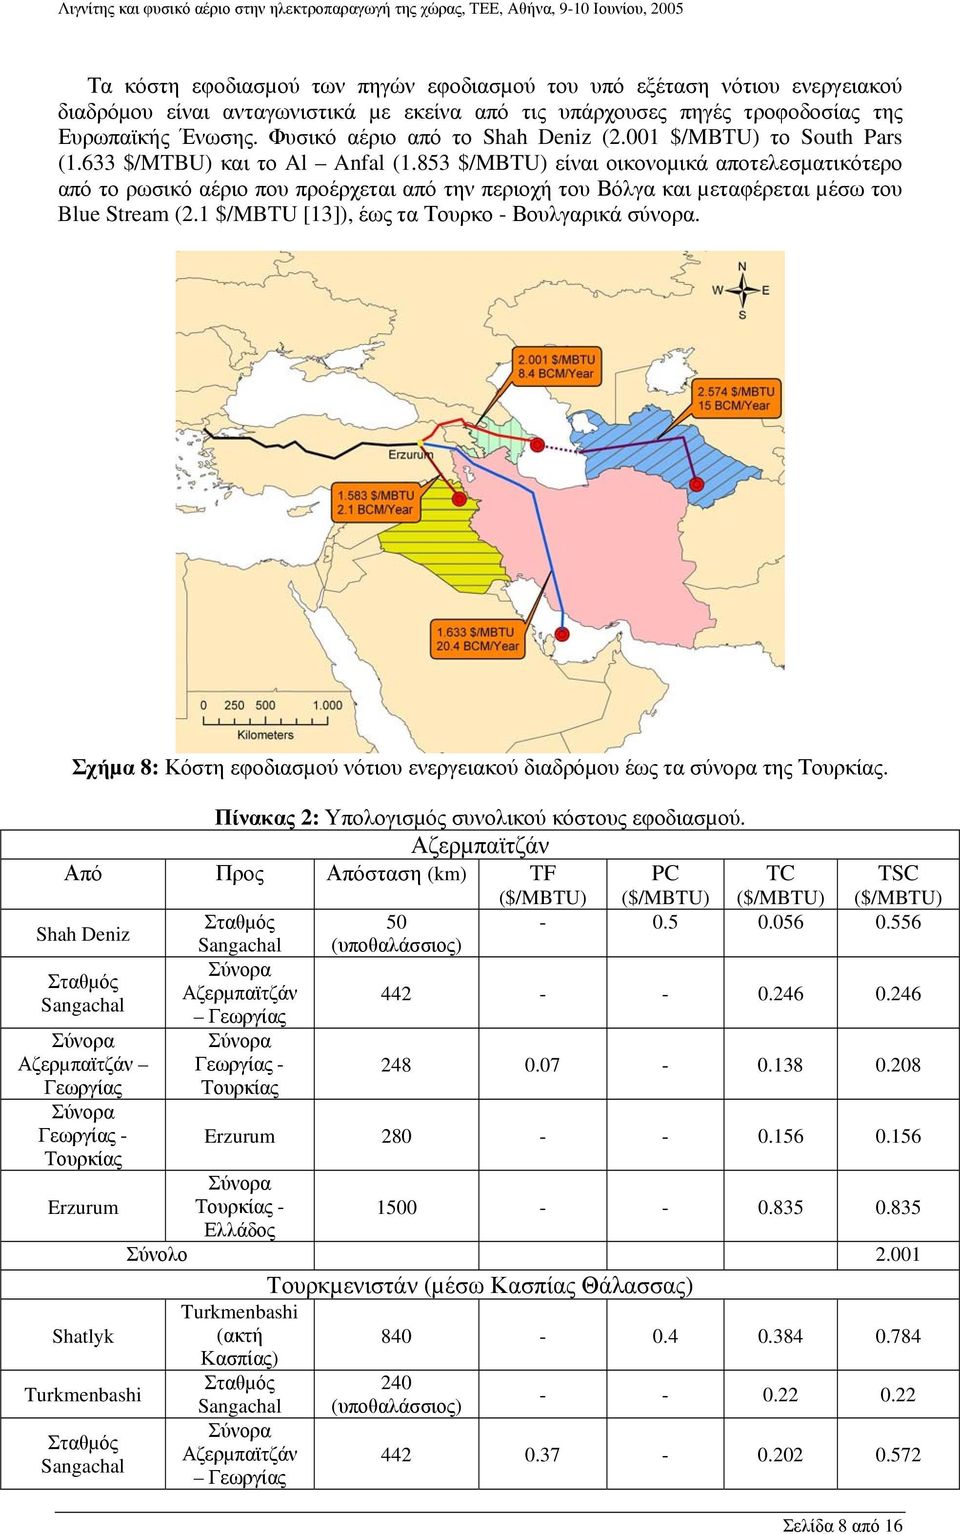 853 $/MBTU) είναι οικονοµικά αποτελεσµατικότερο από το ρωσικό αέριο που προέρχεται από την περιοχή του Βόλγα και µεταφέρεται µέσω του Blue Stream (2.1 $/MBTU [13]), έως τα Τουρκο - Βουλγαρικά σύνορα.